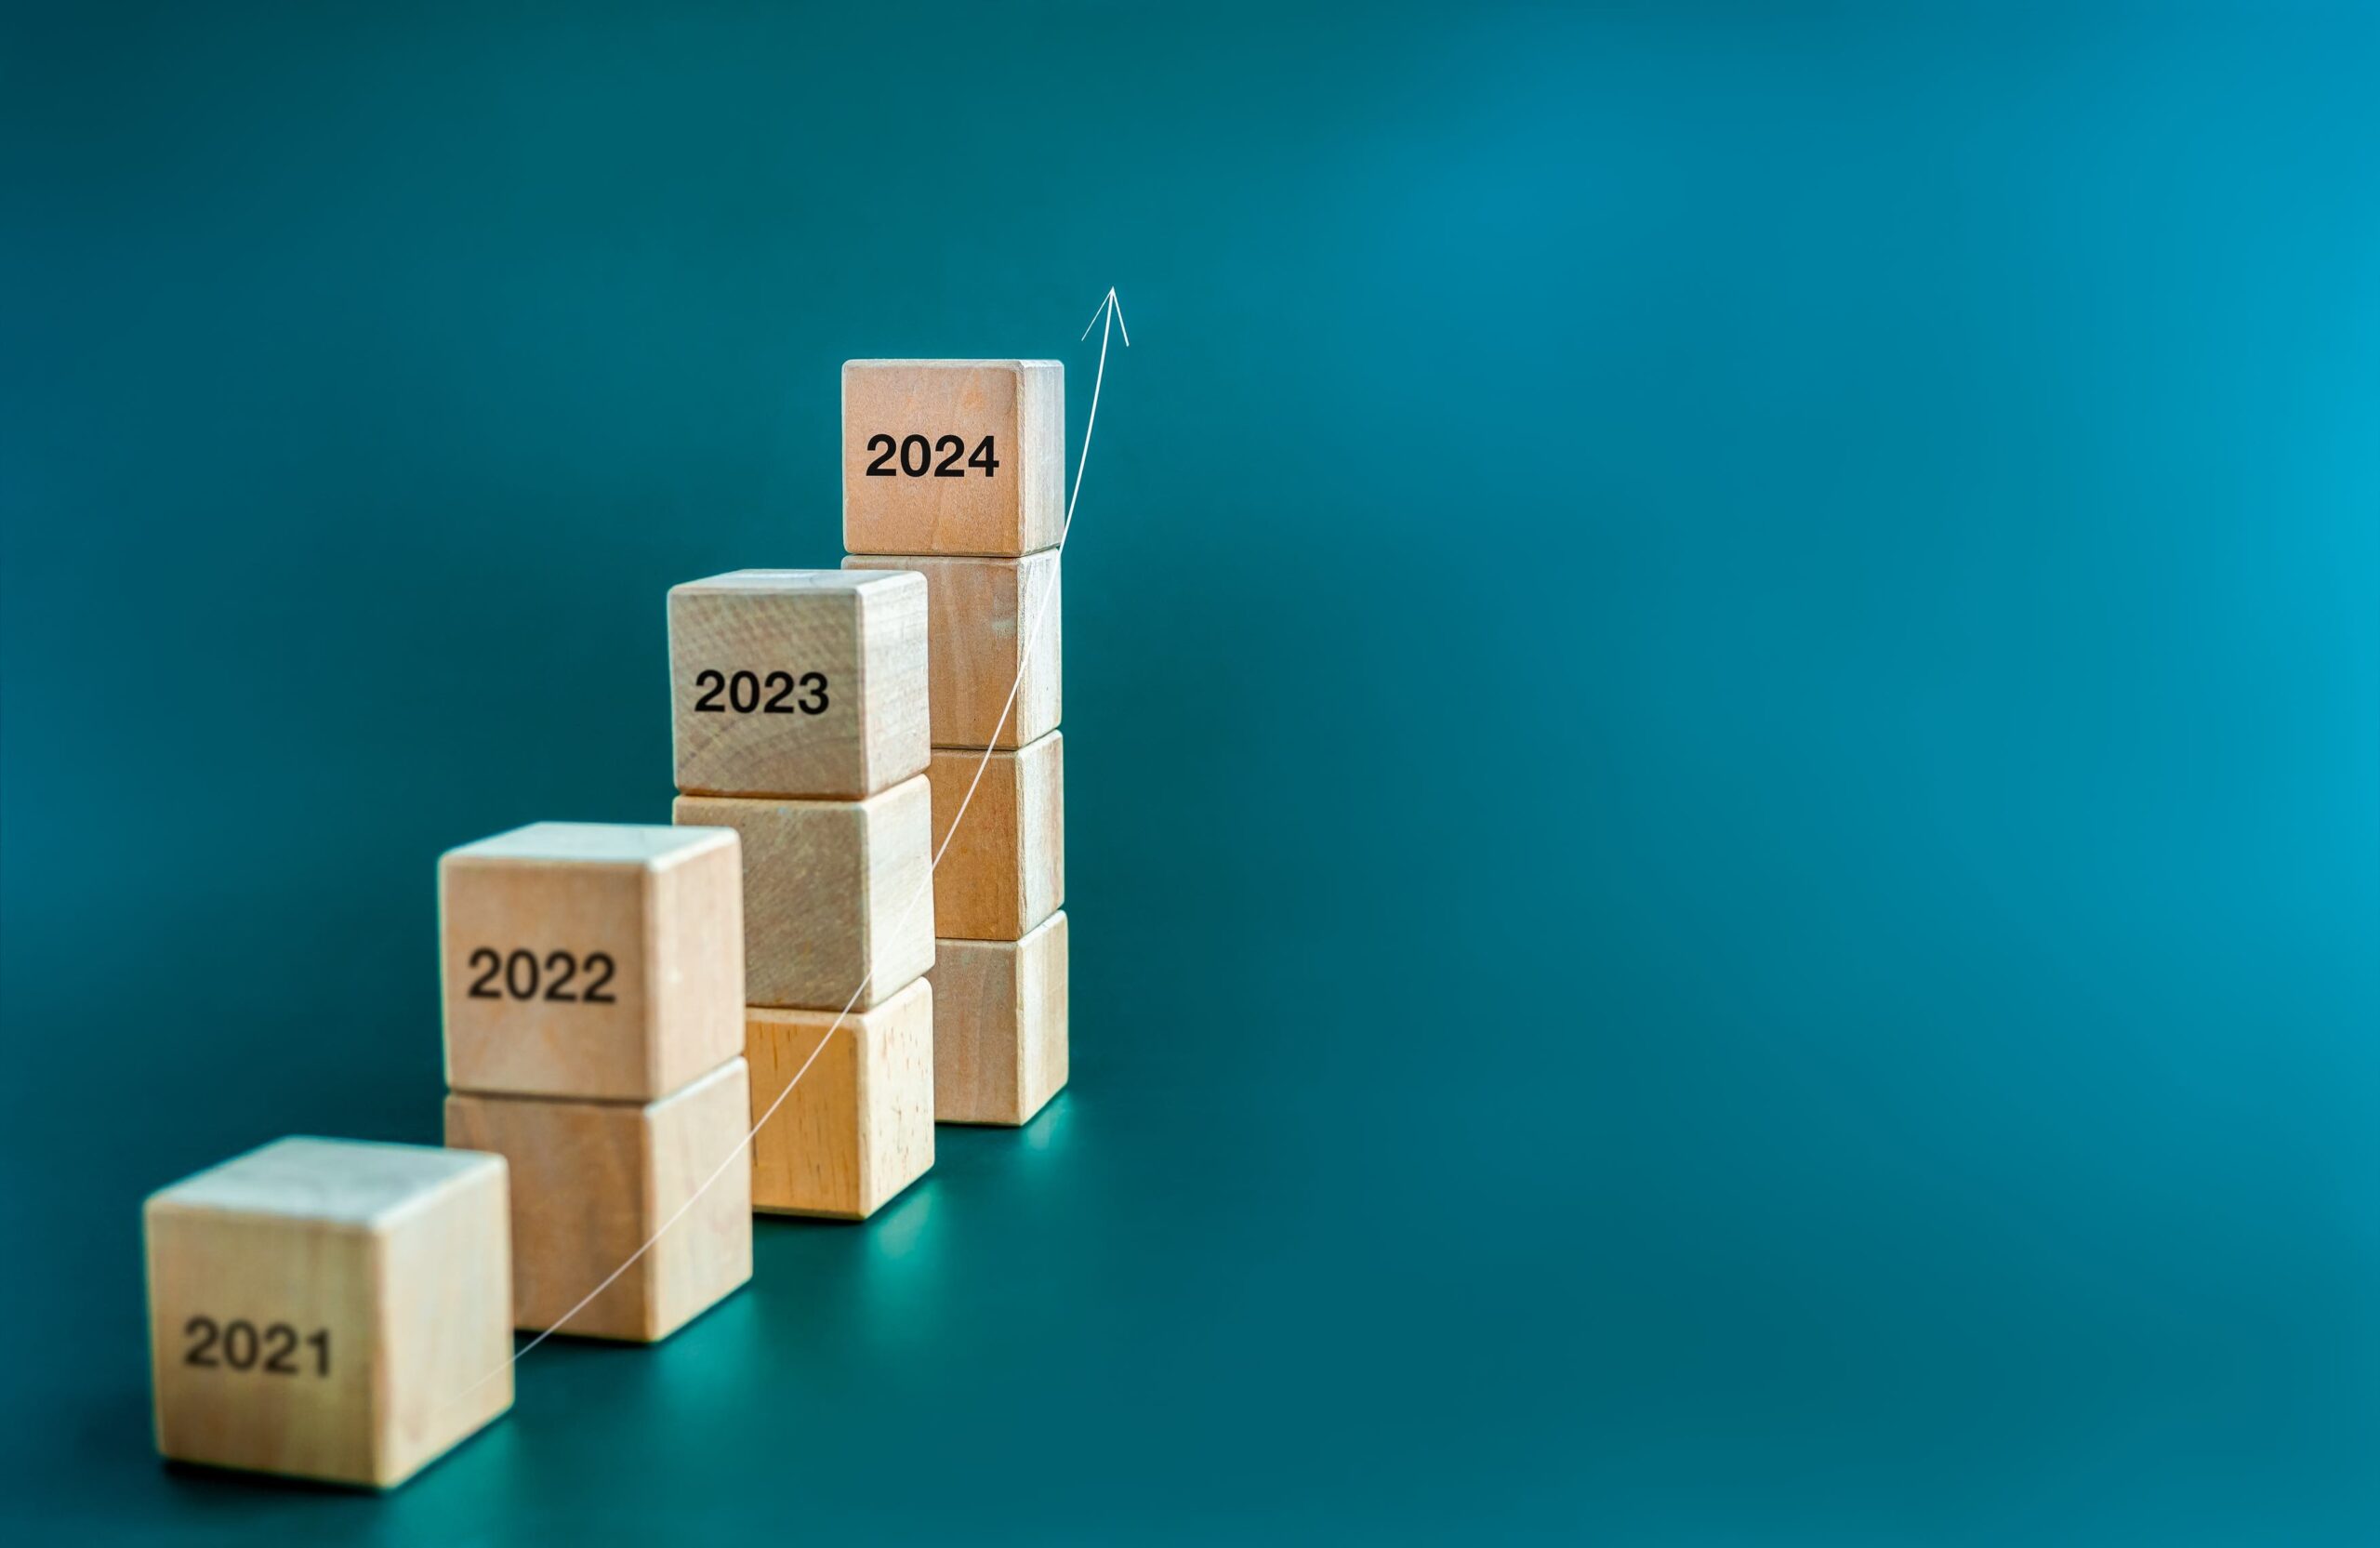 De petites piles de blocs à des hauteurs ascendantes avec les années, 2021-2024 gravées dessus pour indiquer le passage du temps.